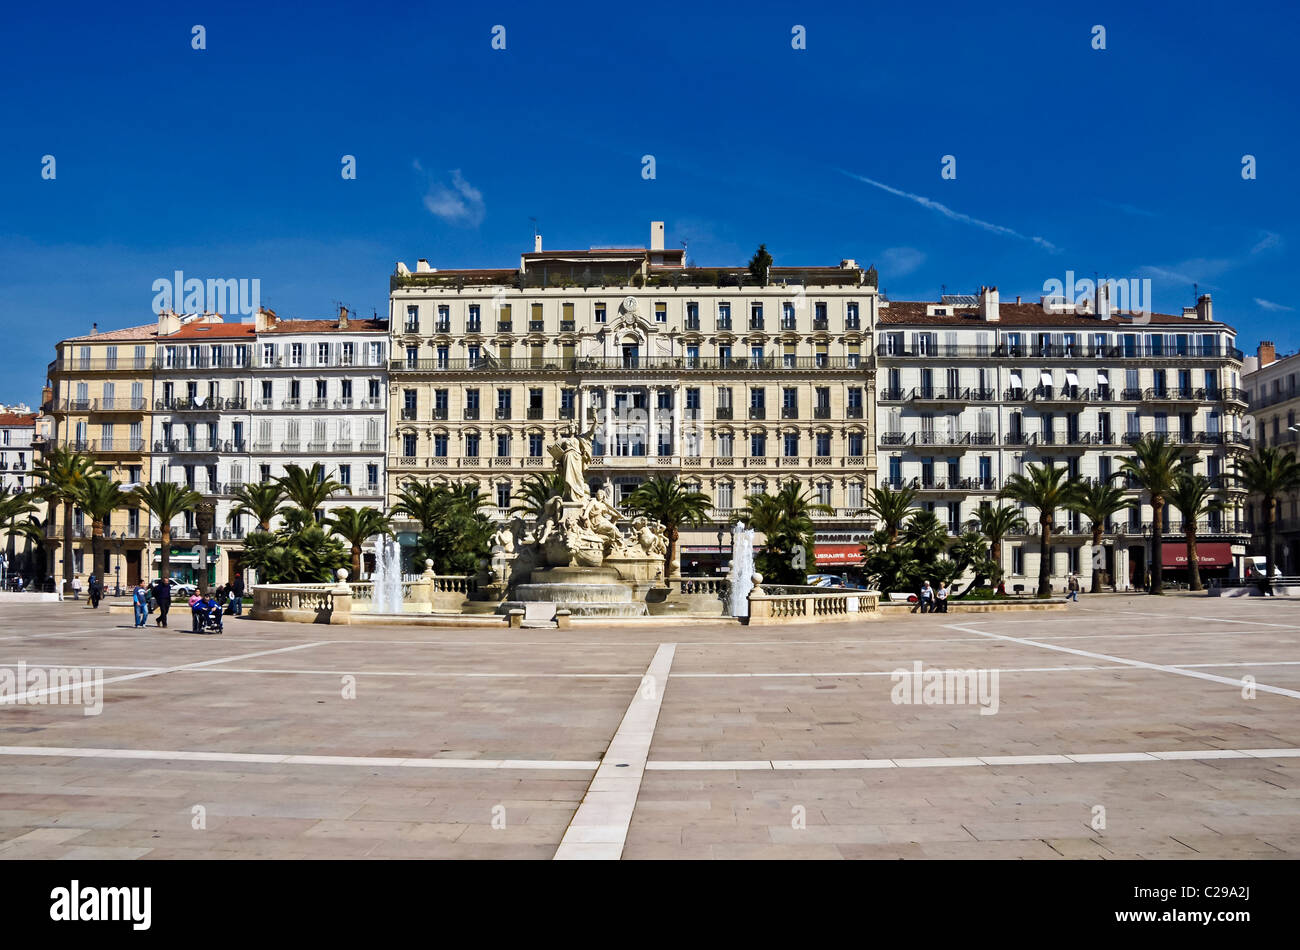 Grand Hotel de la Gare (centre) in Place de la Liberte in the centre of Toulon France Stock Photo